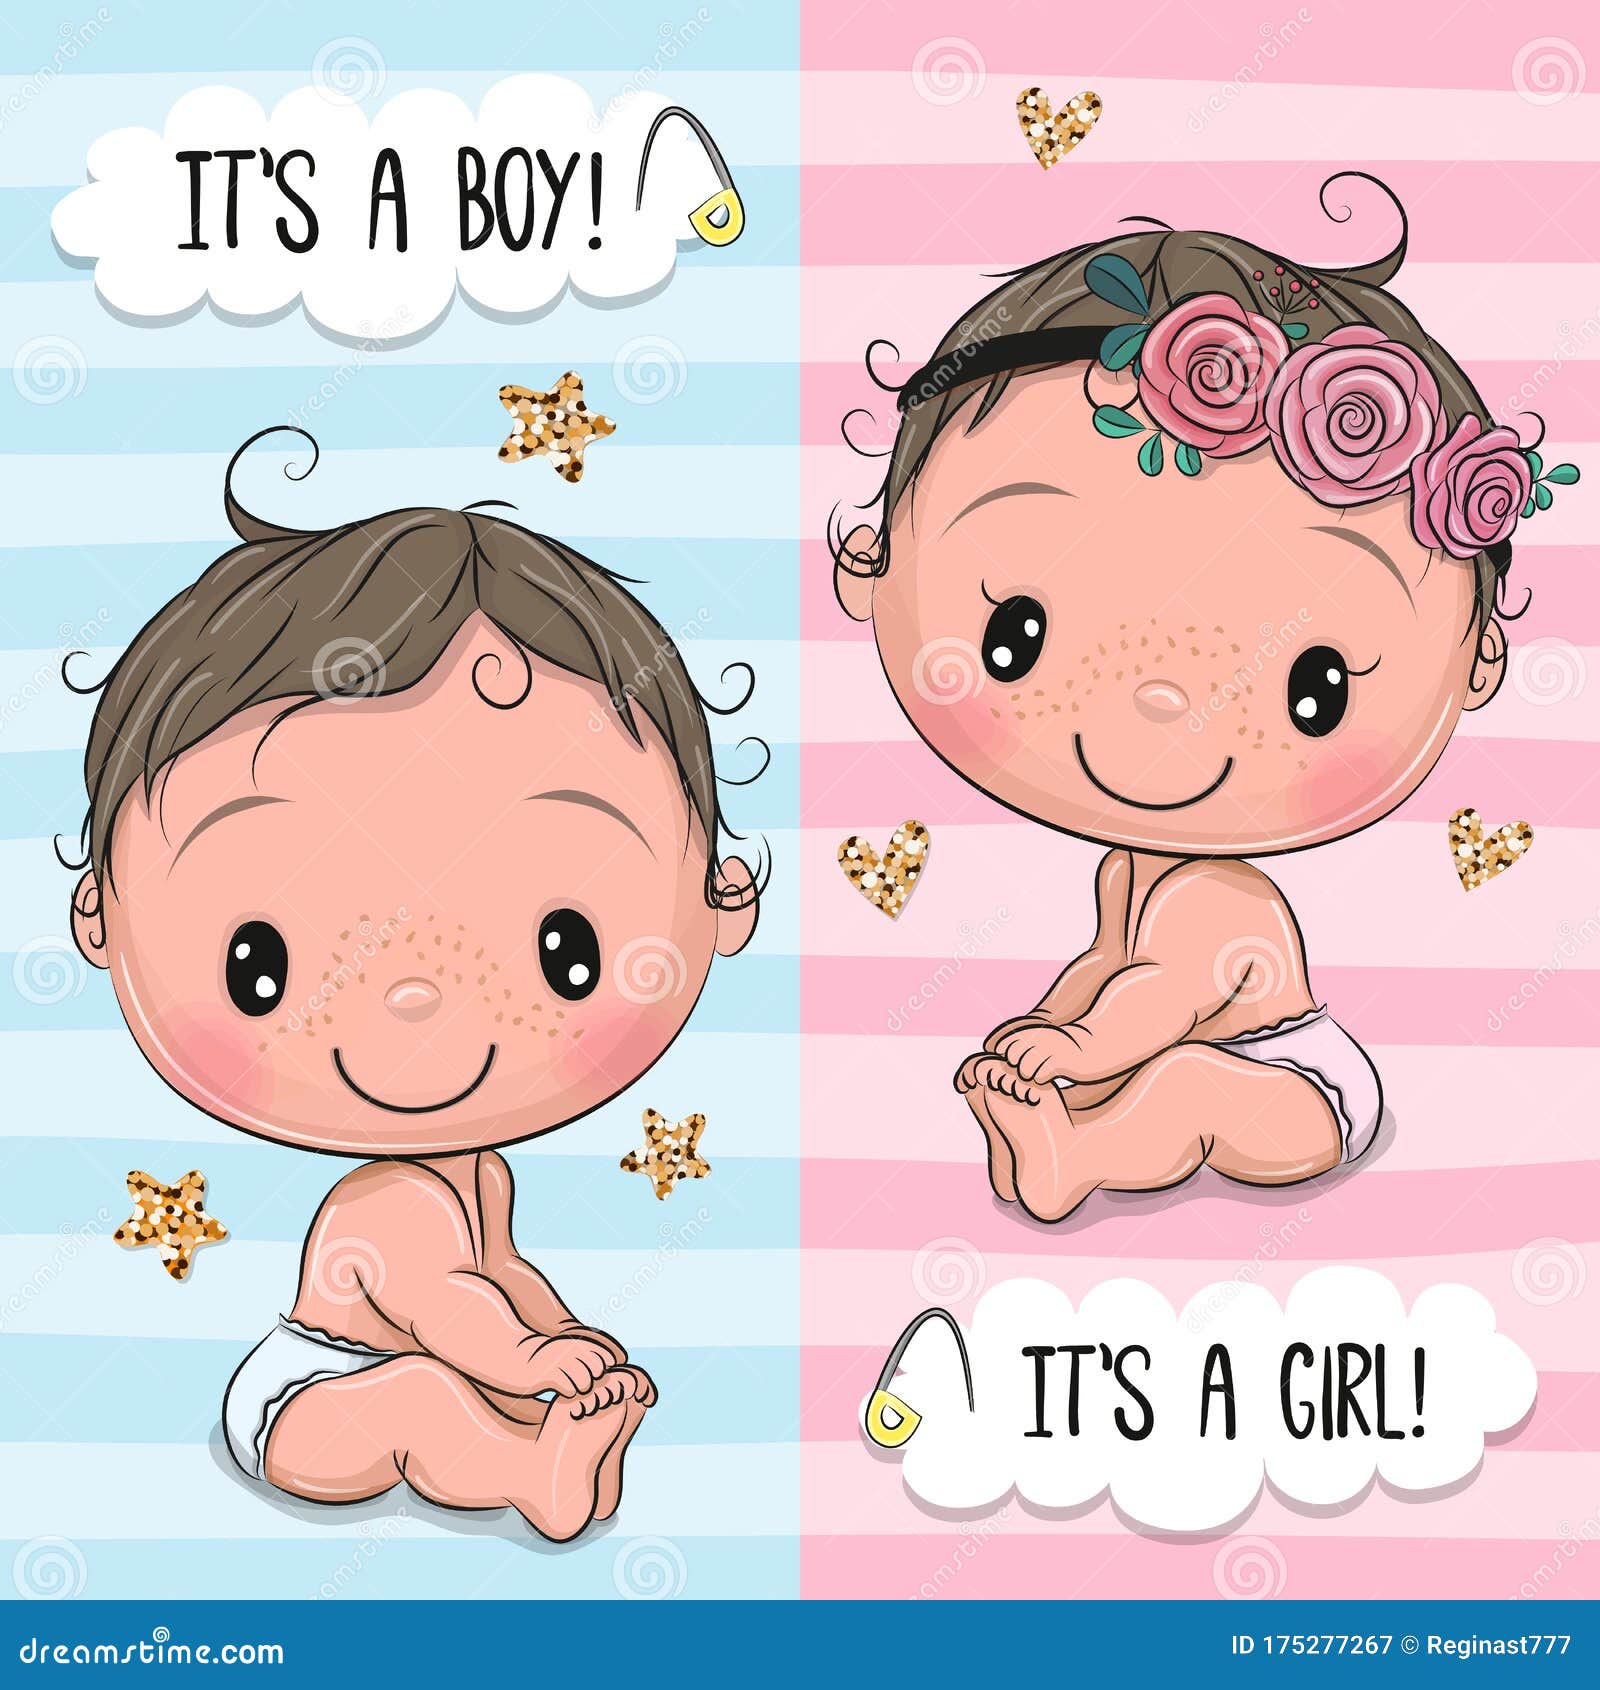 Baby Shower, Boy or Girl